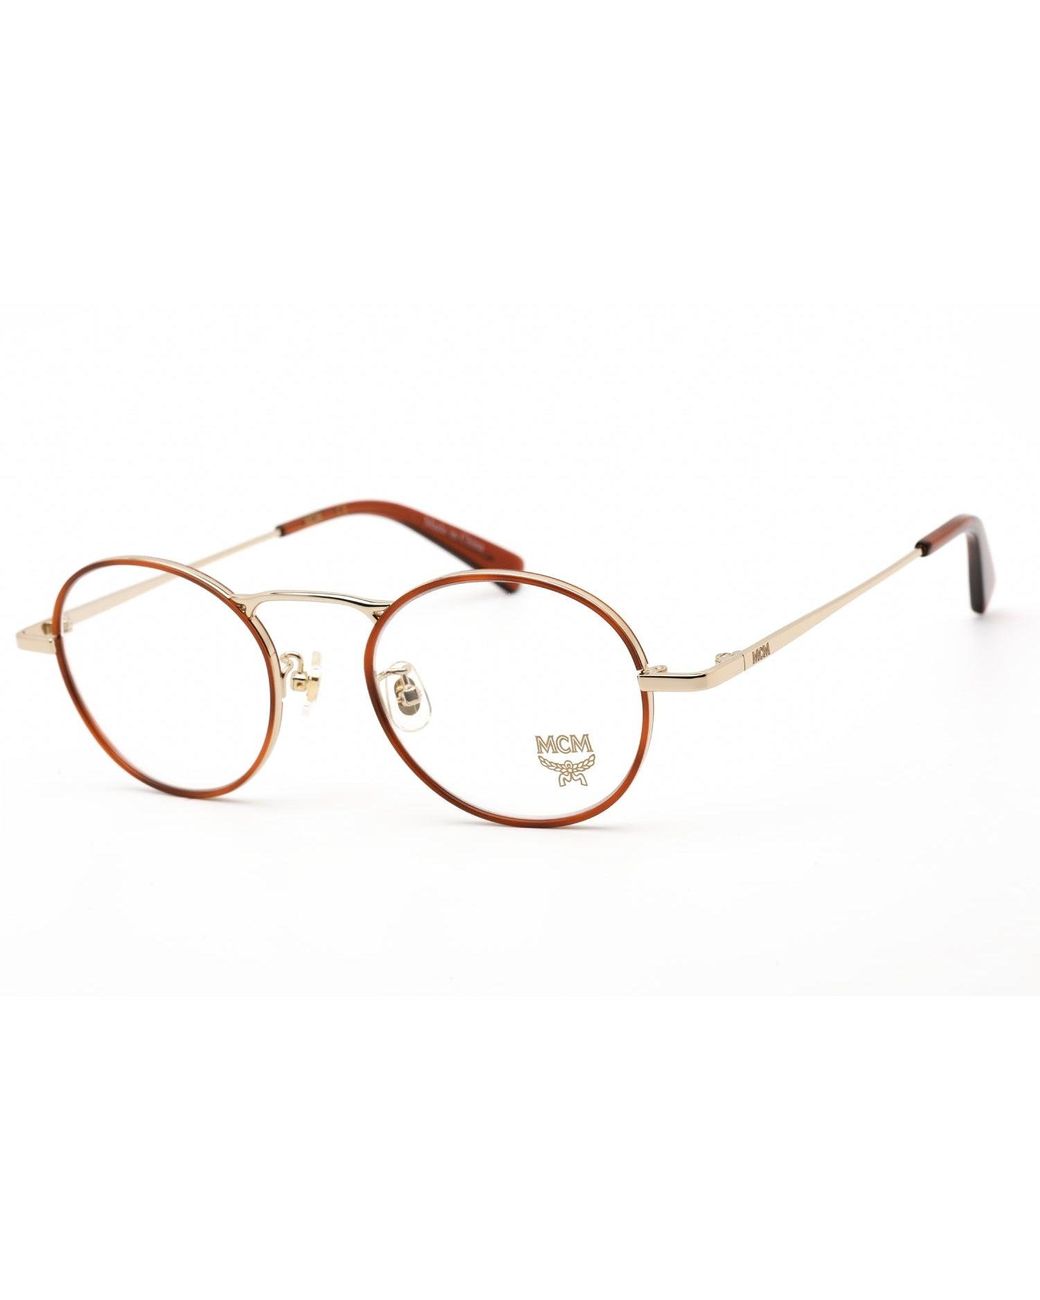 MCM 2125a Eyeglasses Blonde Havana / Clear Lens in Metallic | Lyst UK